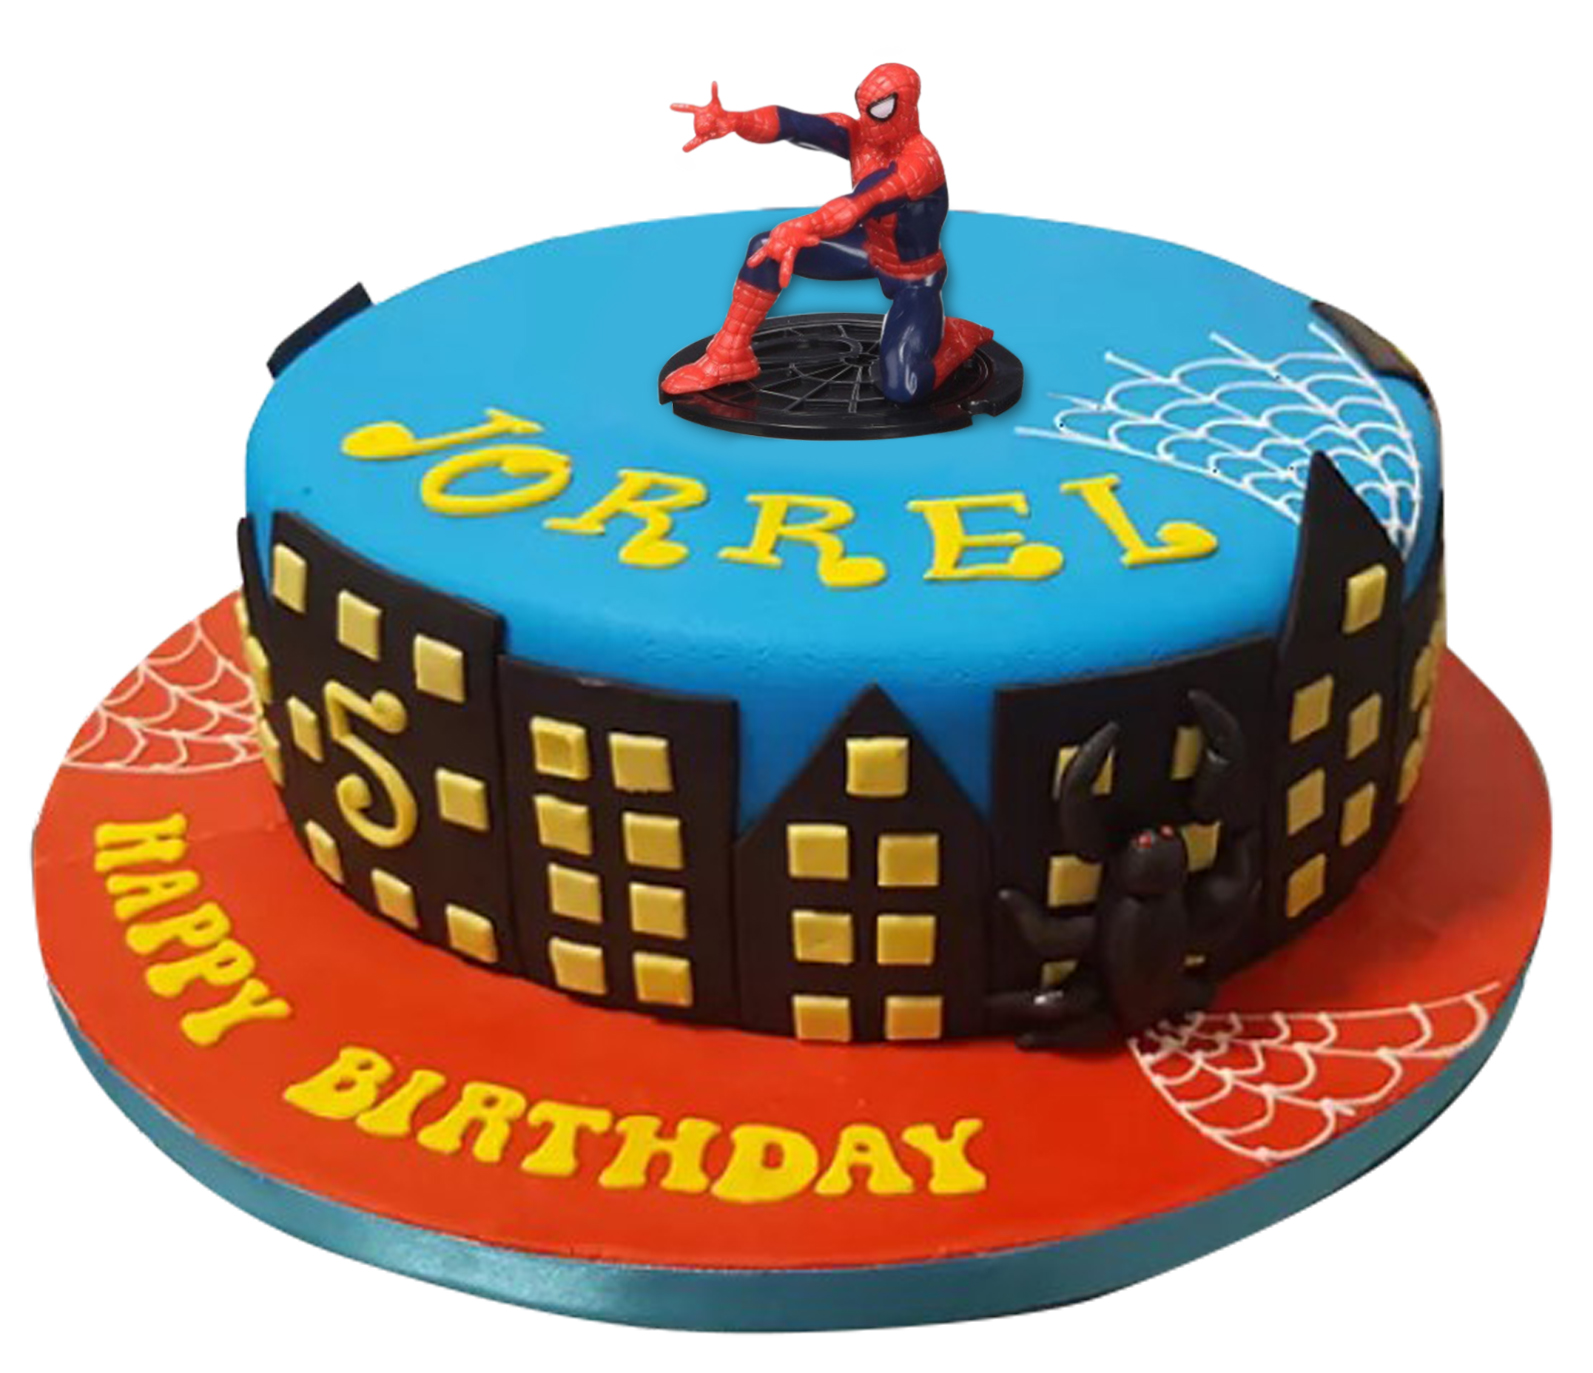 Licensed Spiderman Birthday Cake for Kids